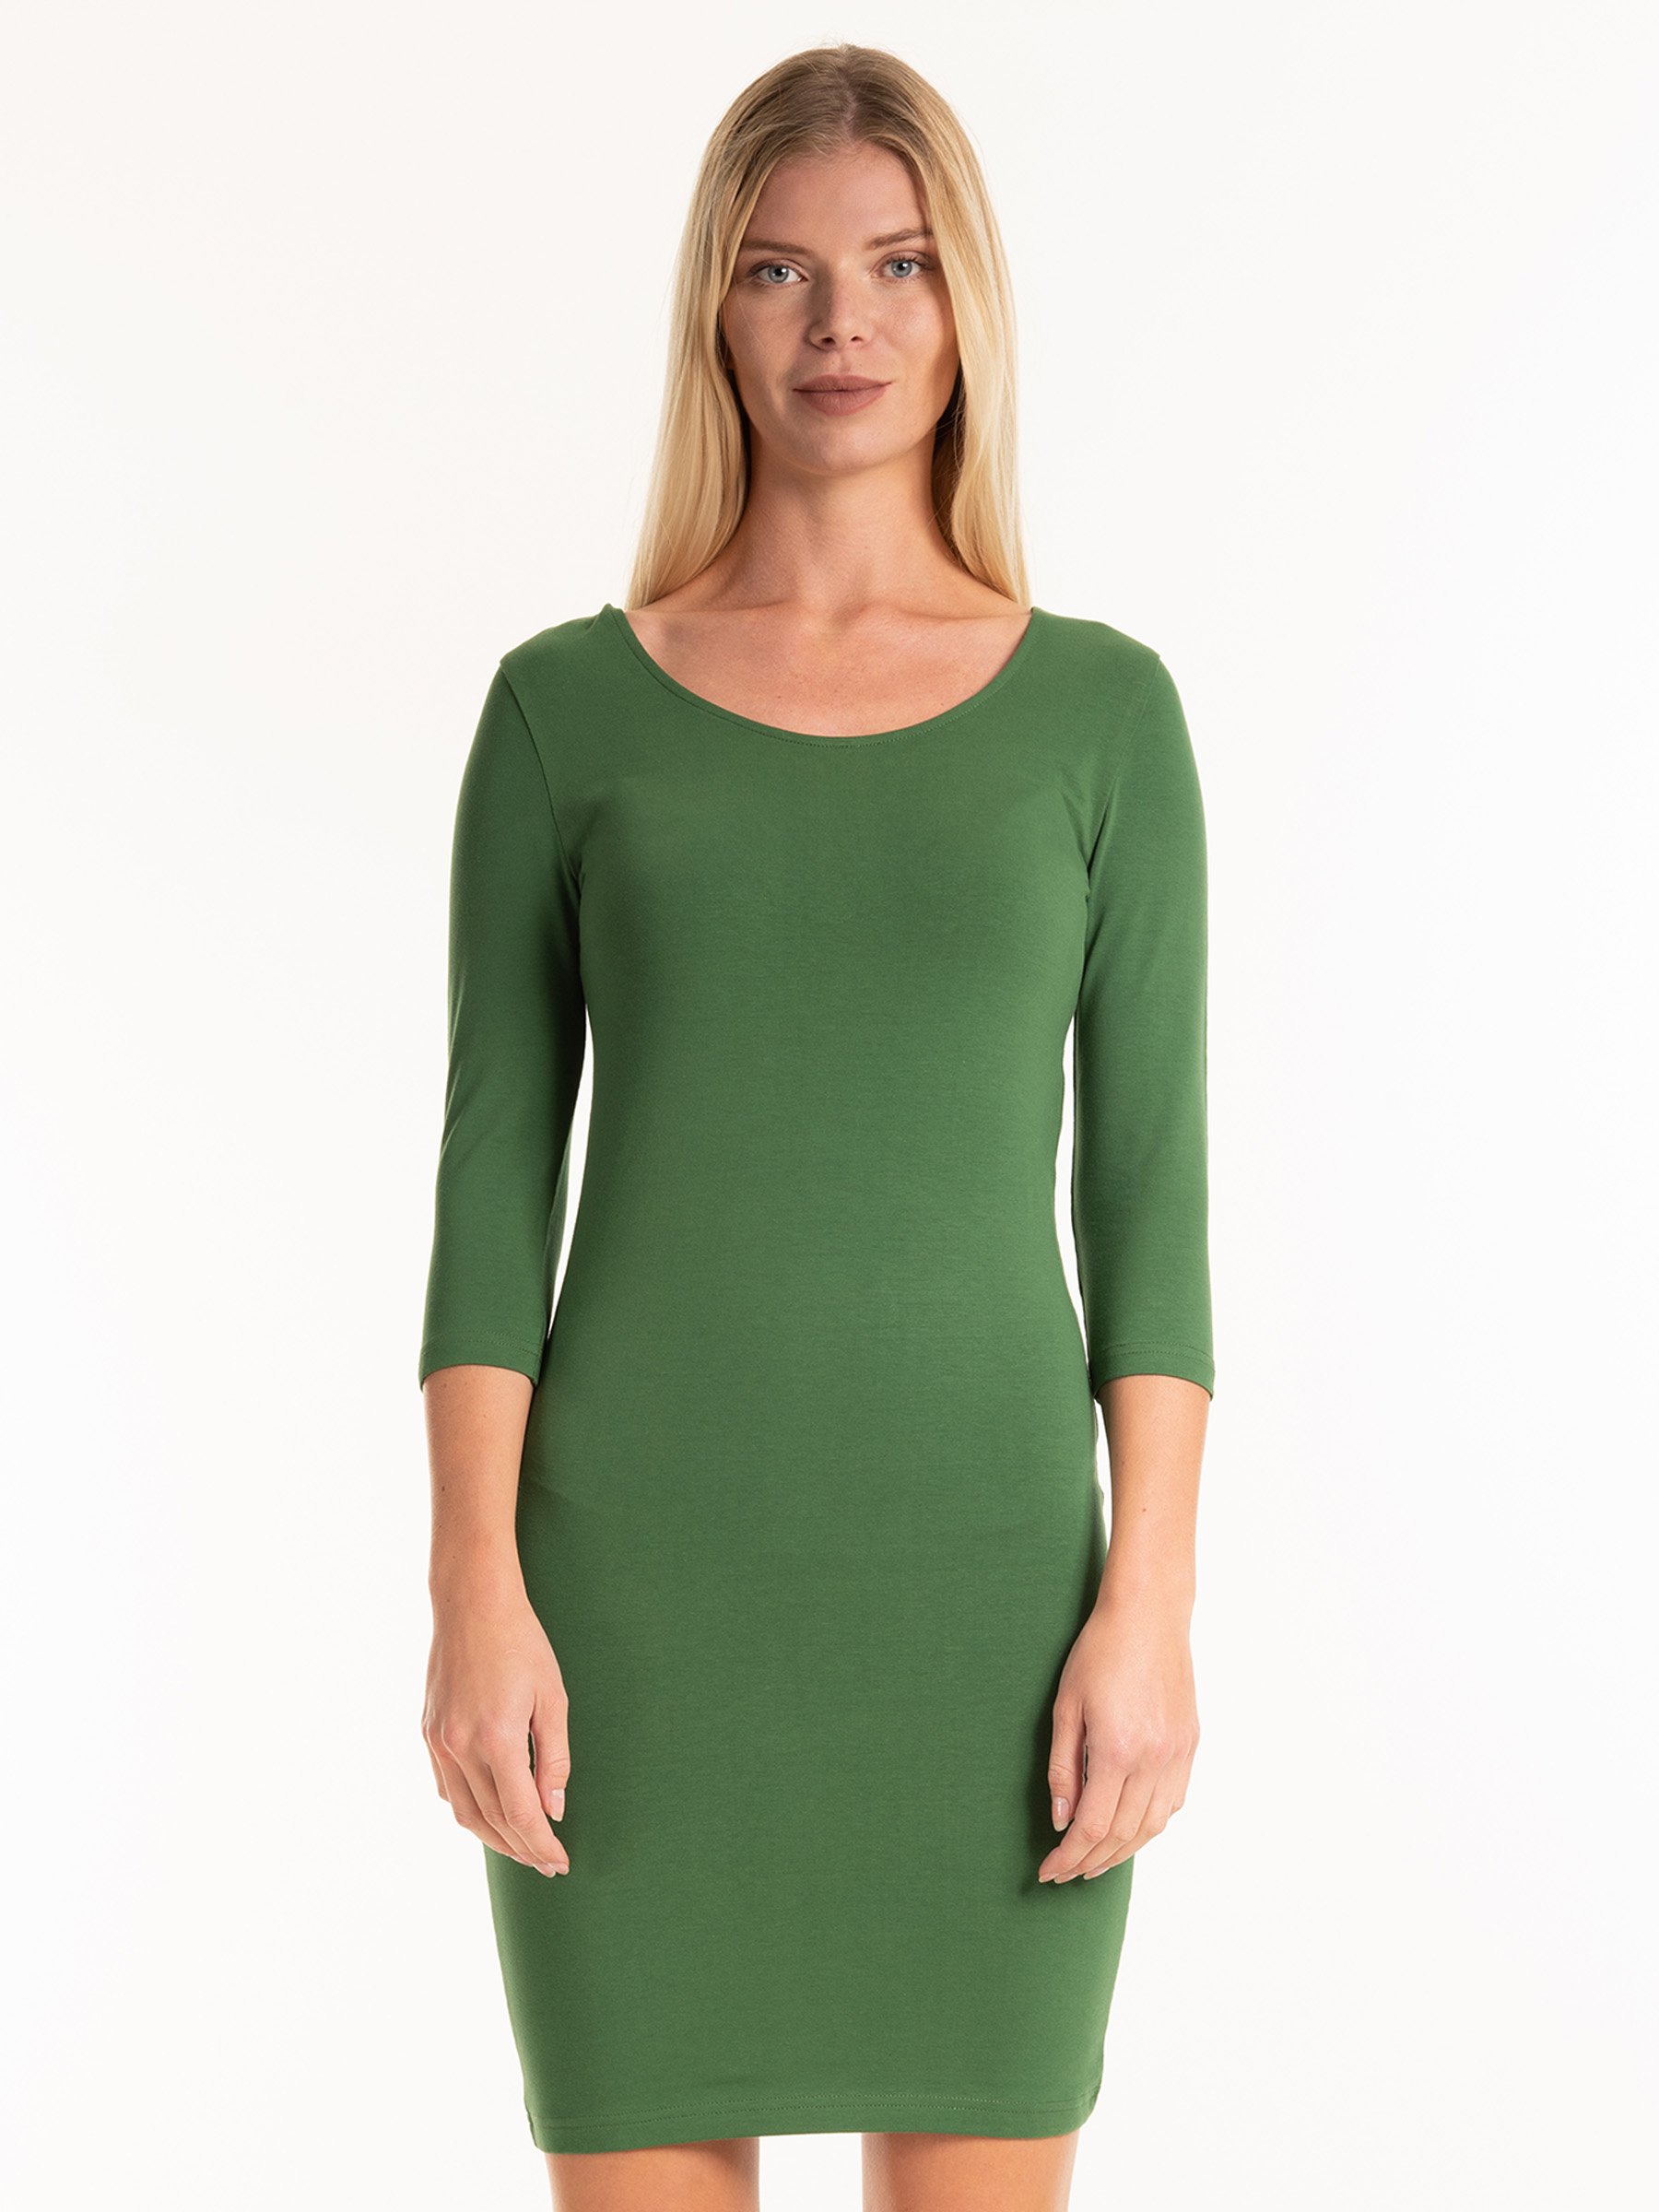 plain green dress